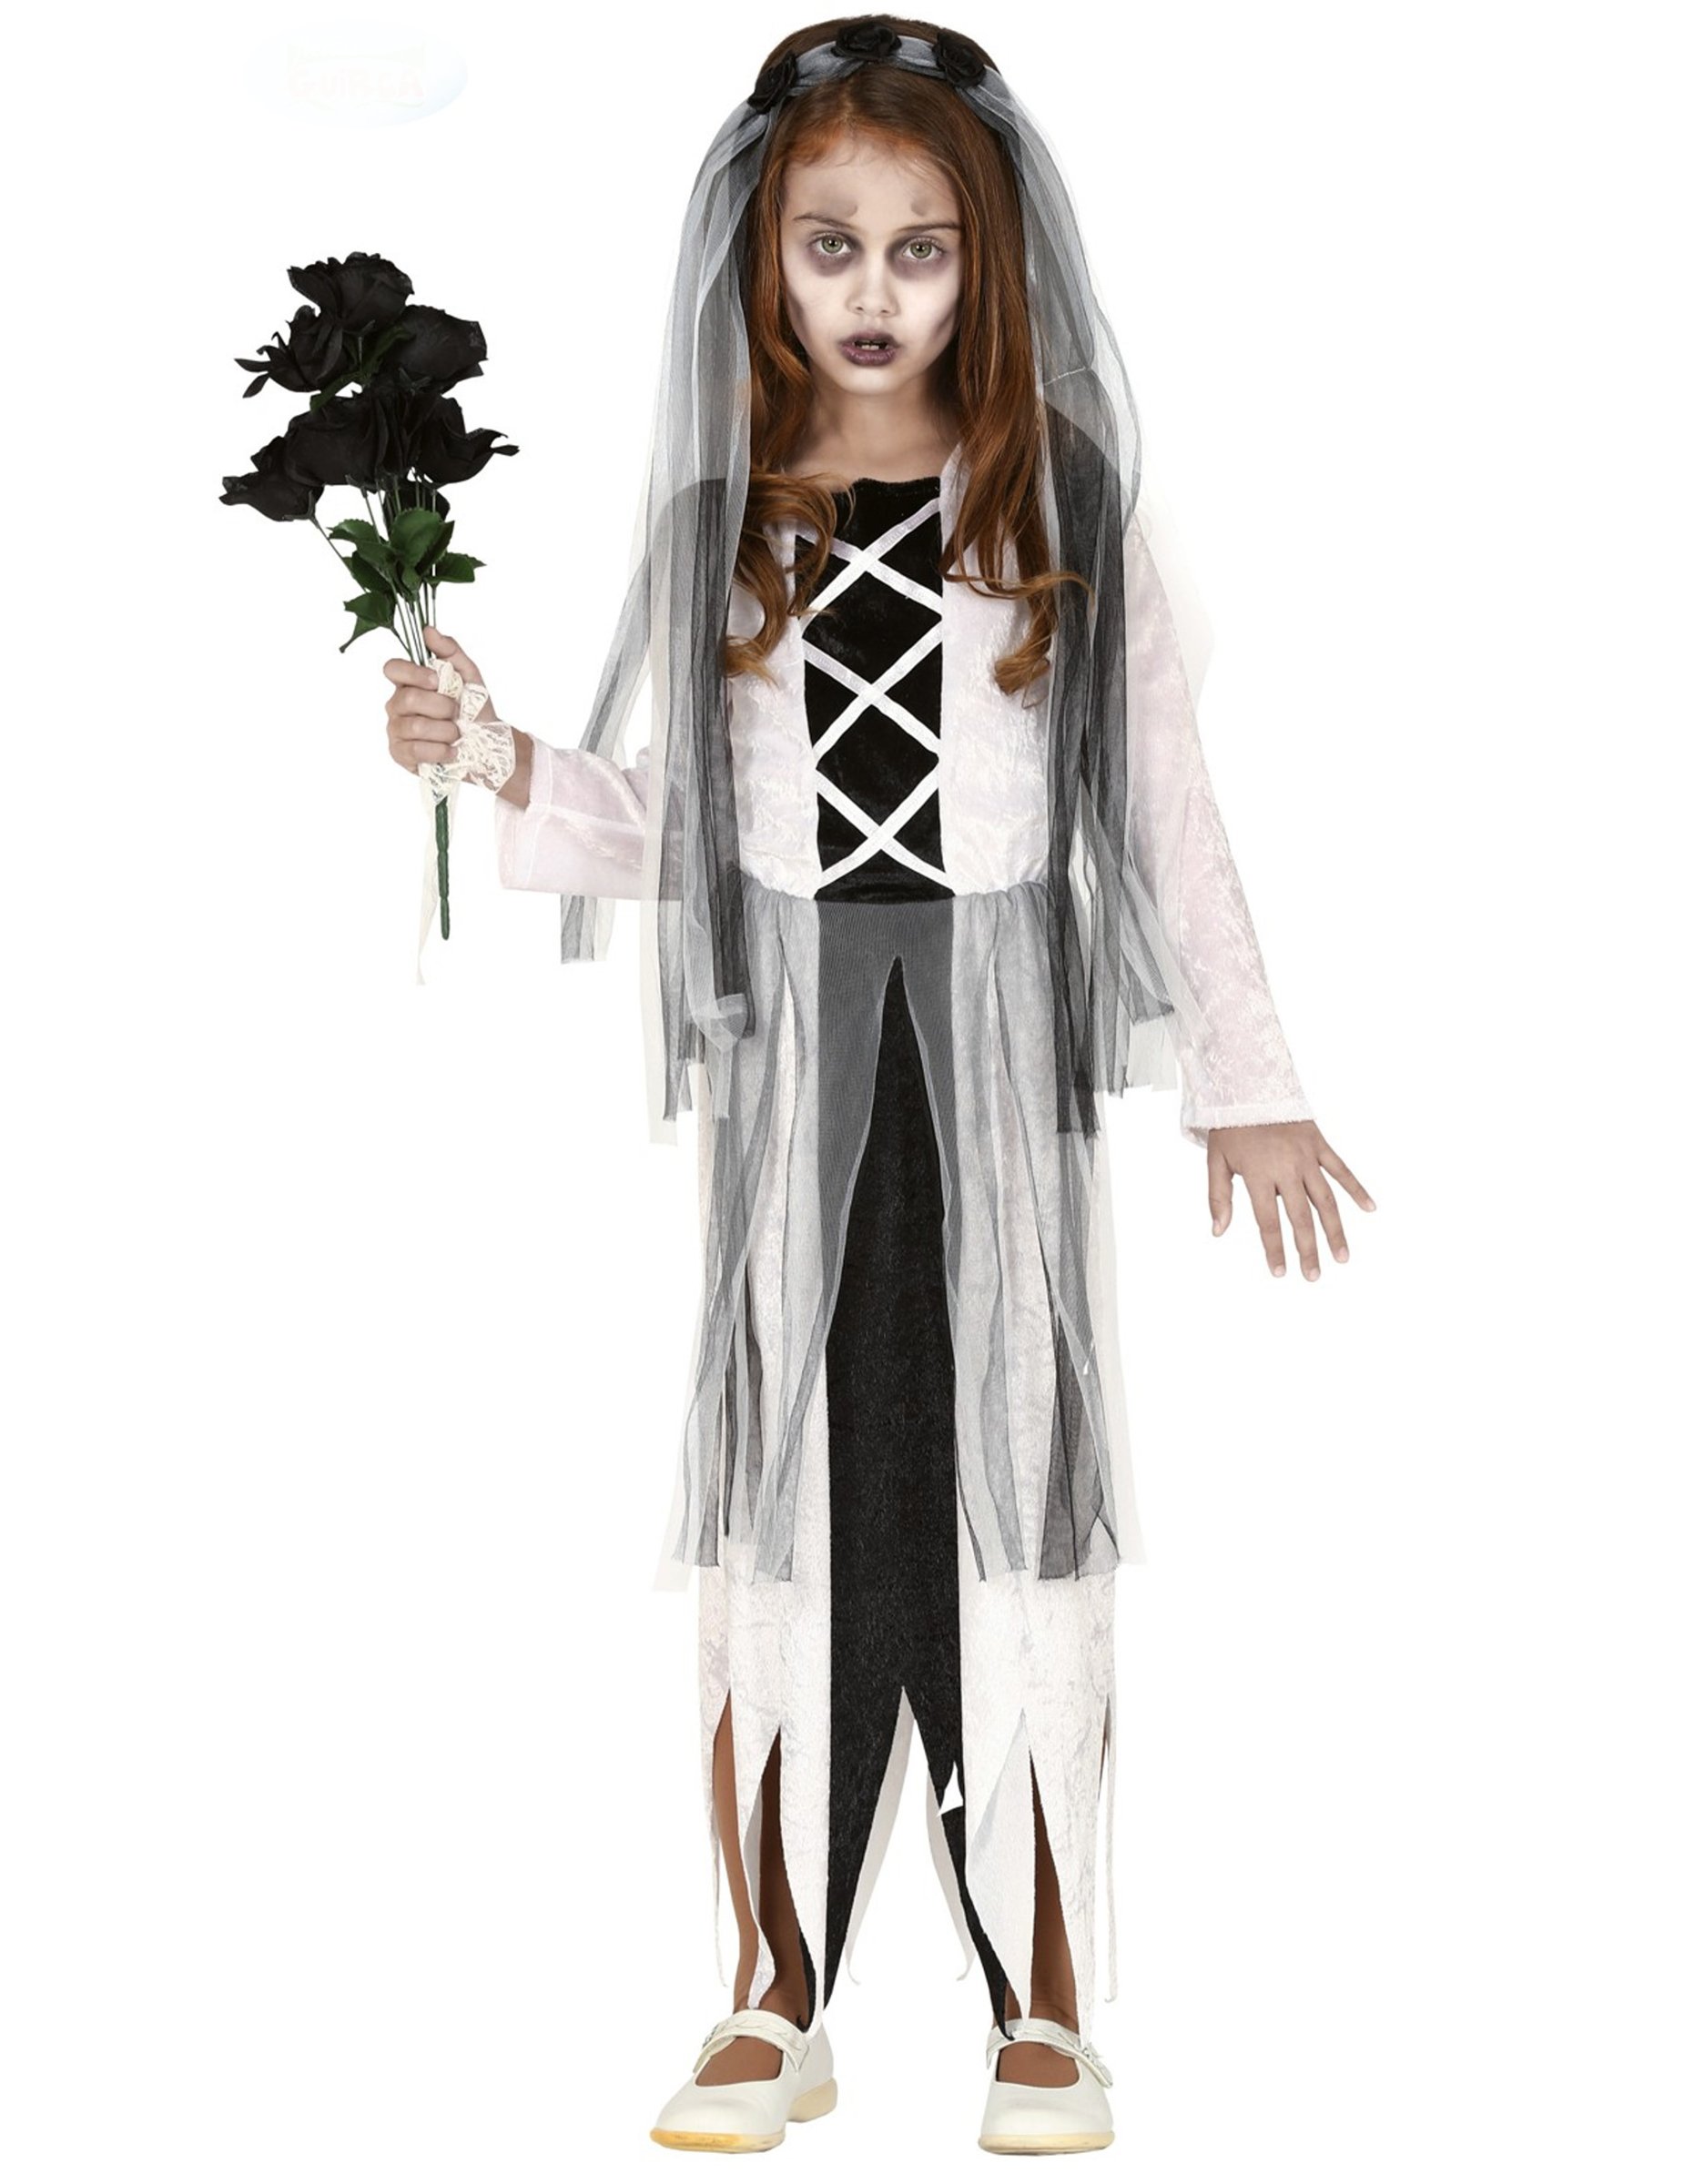 Geister-Brautkostüm für Mädchen Halloween-Kostüm schwarz-weiss von FIESTAS GUIRCA, S.L.